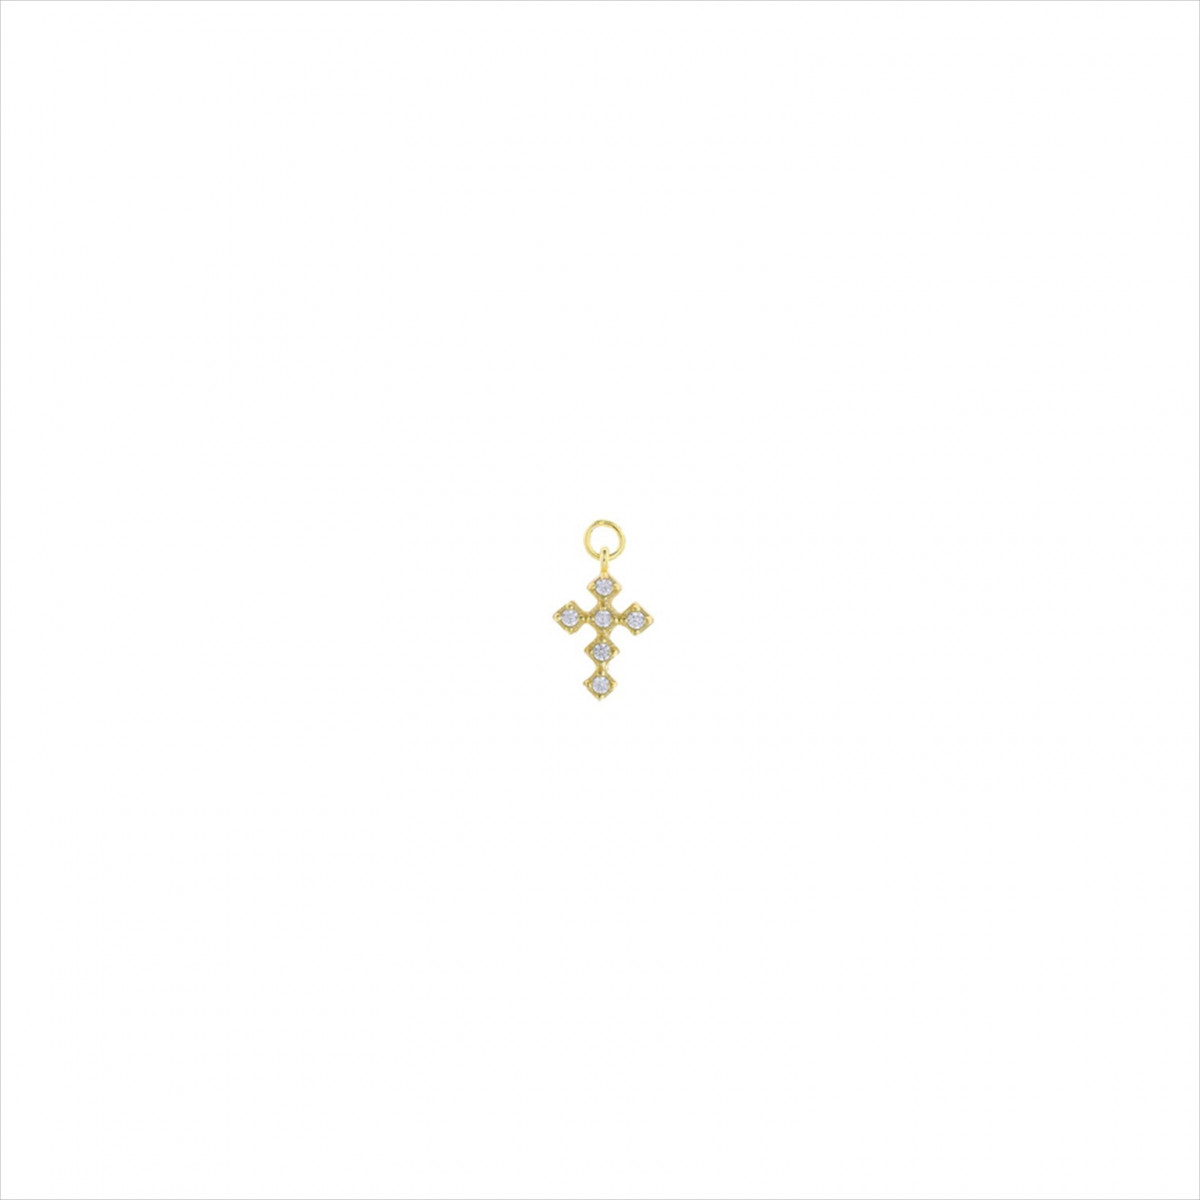 Colgante charm plata bañada en oro, cruz circonitas blancas brillantes. Miscellany. Salvatore